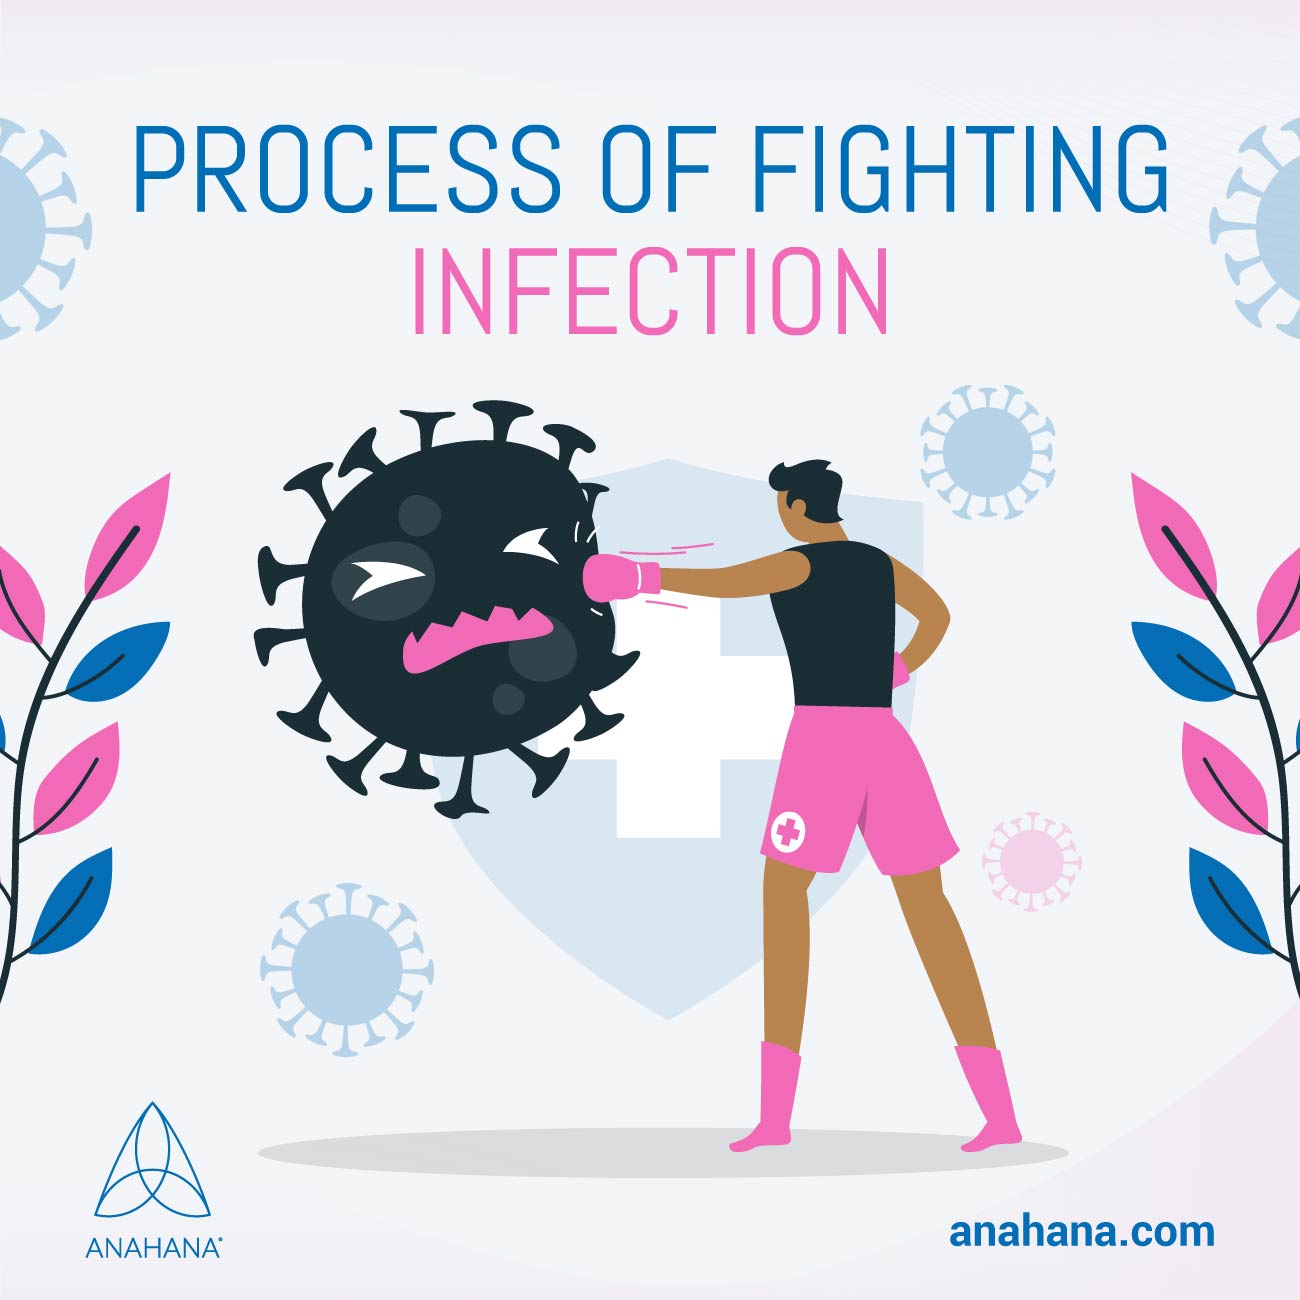 процесс борьбы с инфекцией